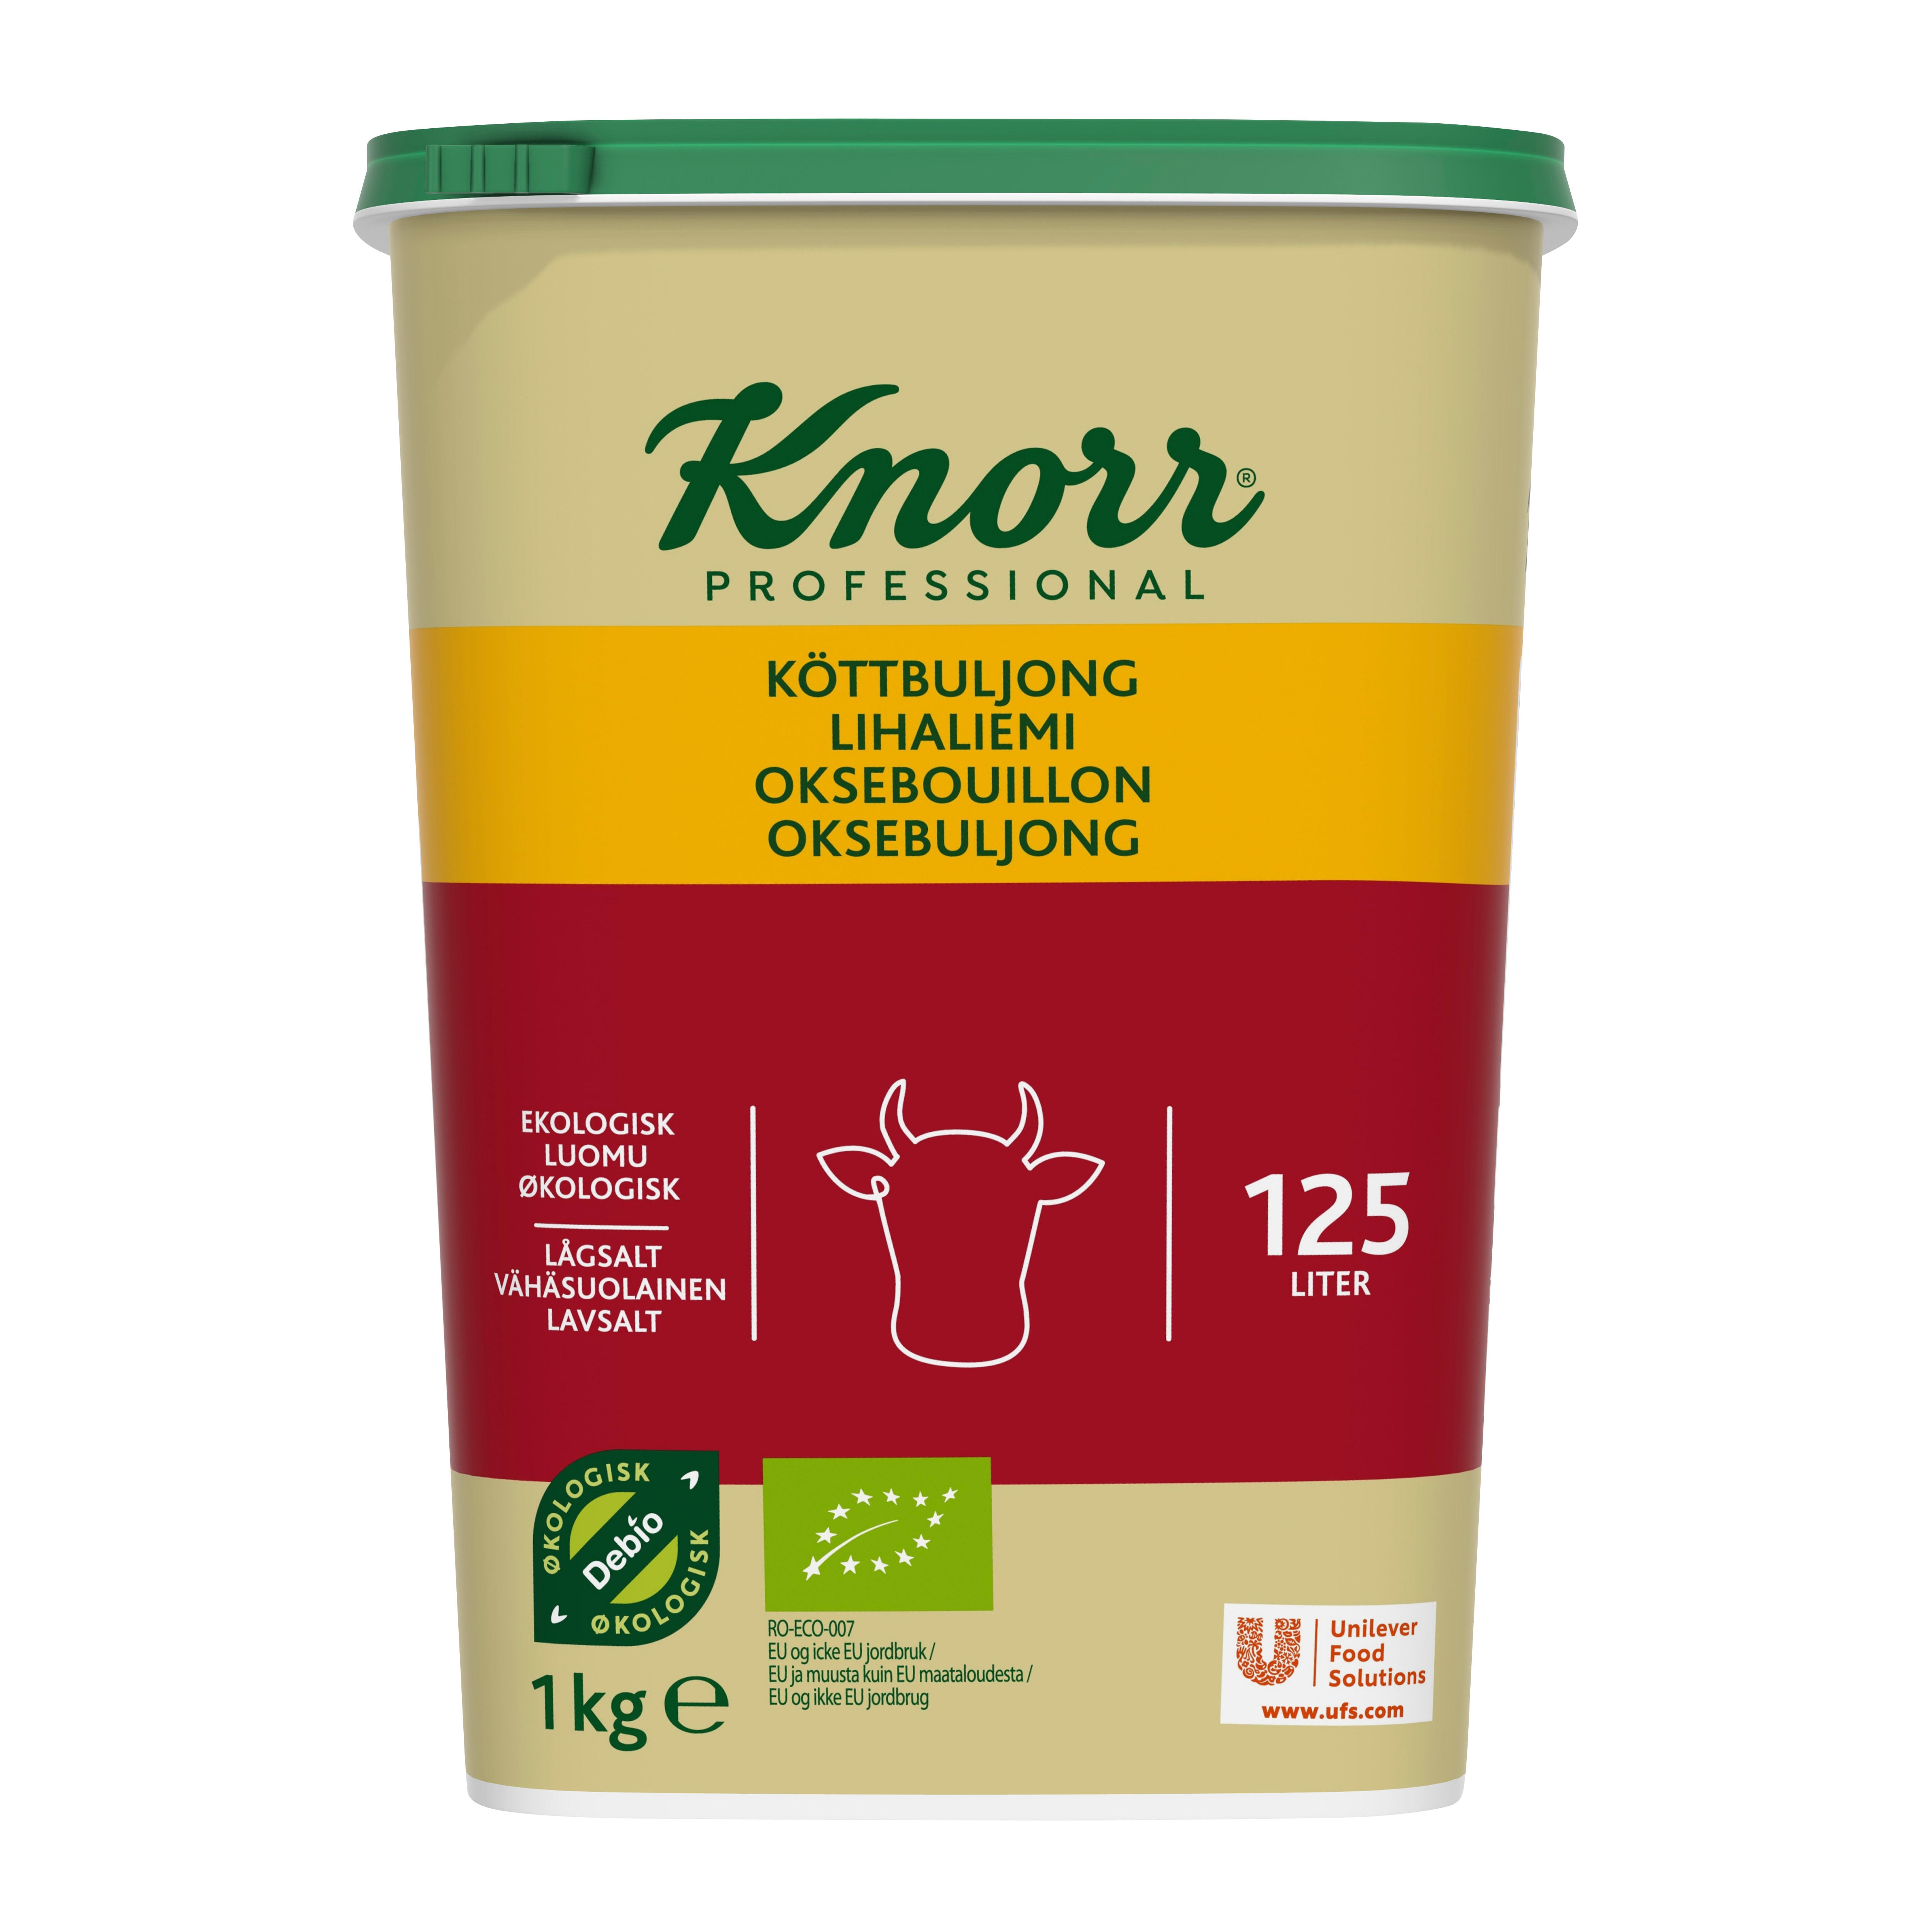 Knorr Økologisk Oksebouillon, lavsalt, granulat, 1kg / 125L